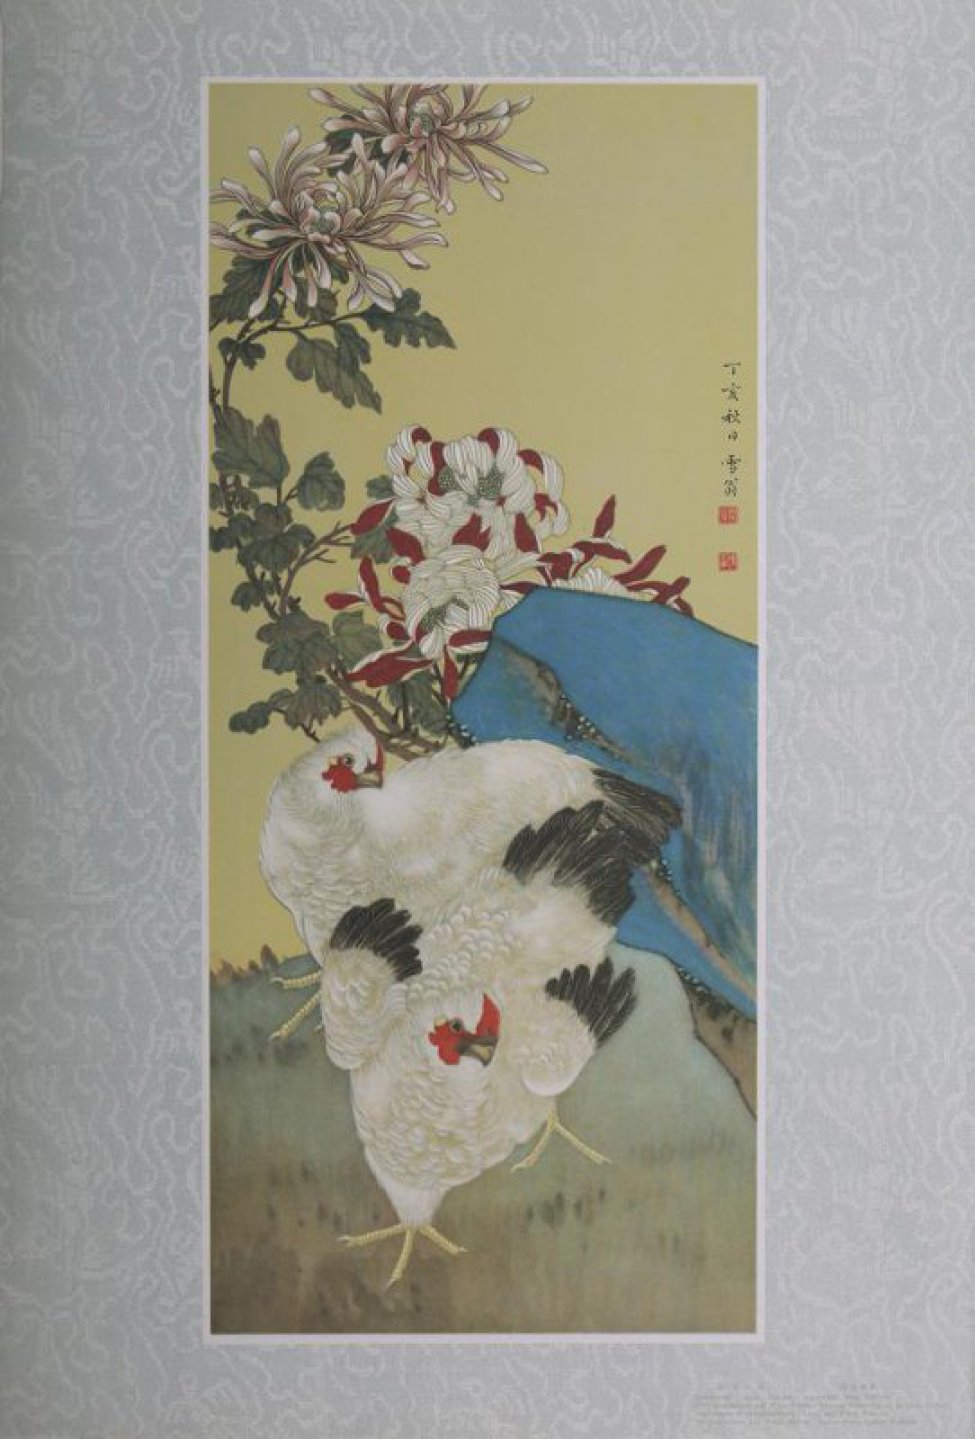 На переднем плане изображены две белых нахохлившиеся курицы и две ветки хризантем. Головы кур обращены вправо, концы крыльев и хвосты- черные.